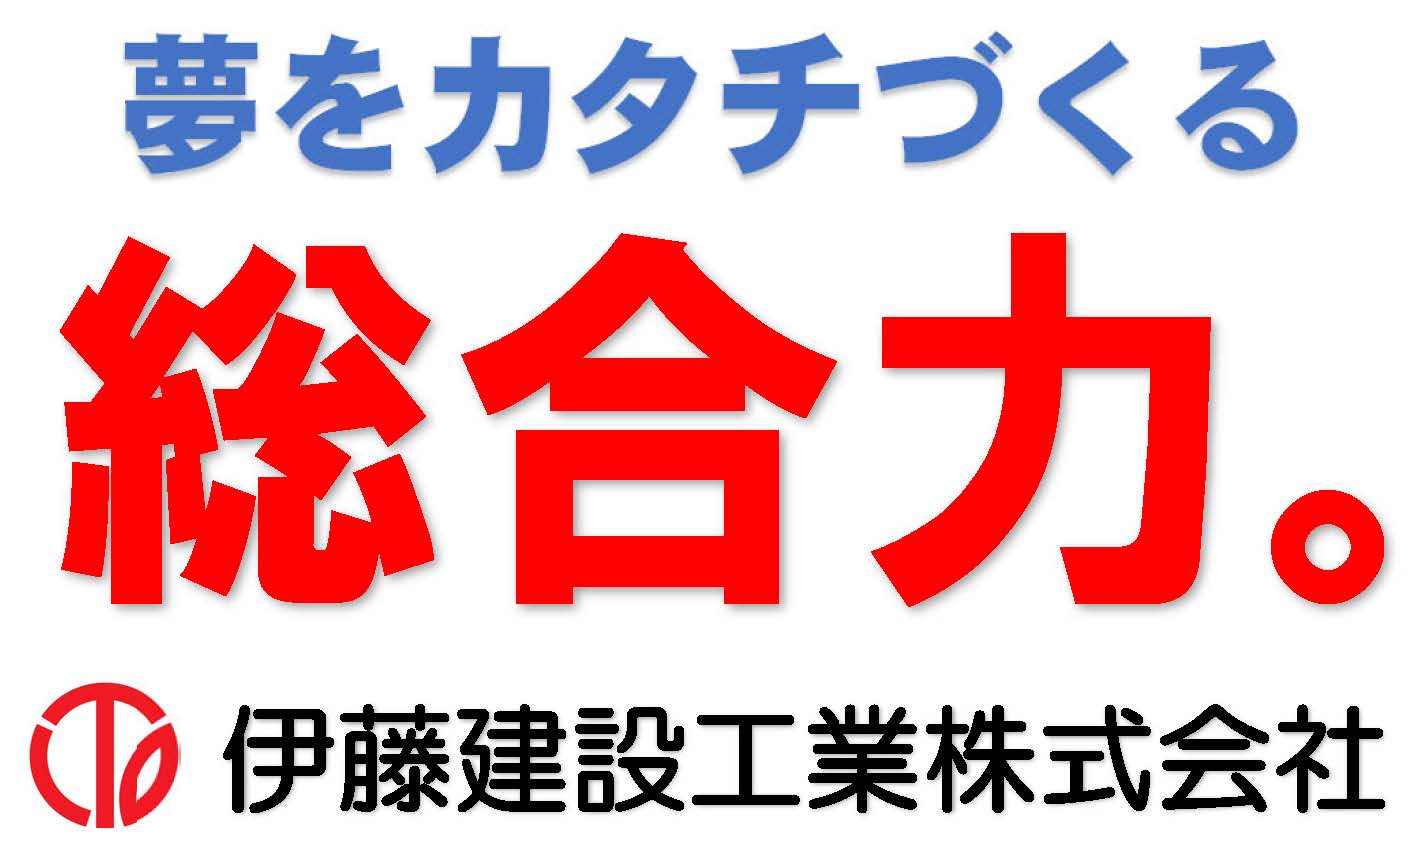 ロゴ:伊藤建設工業株式会社